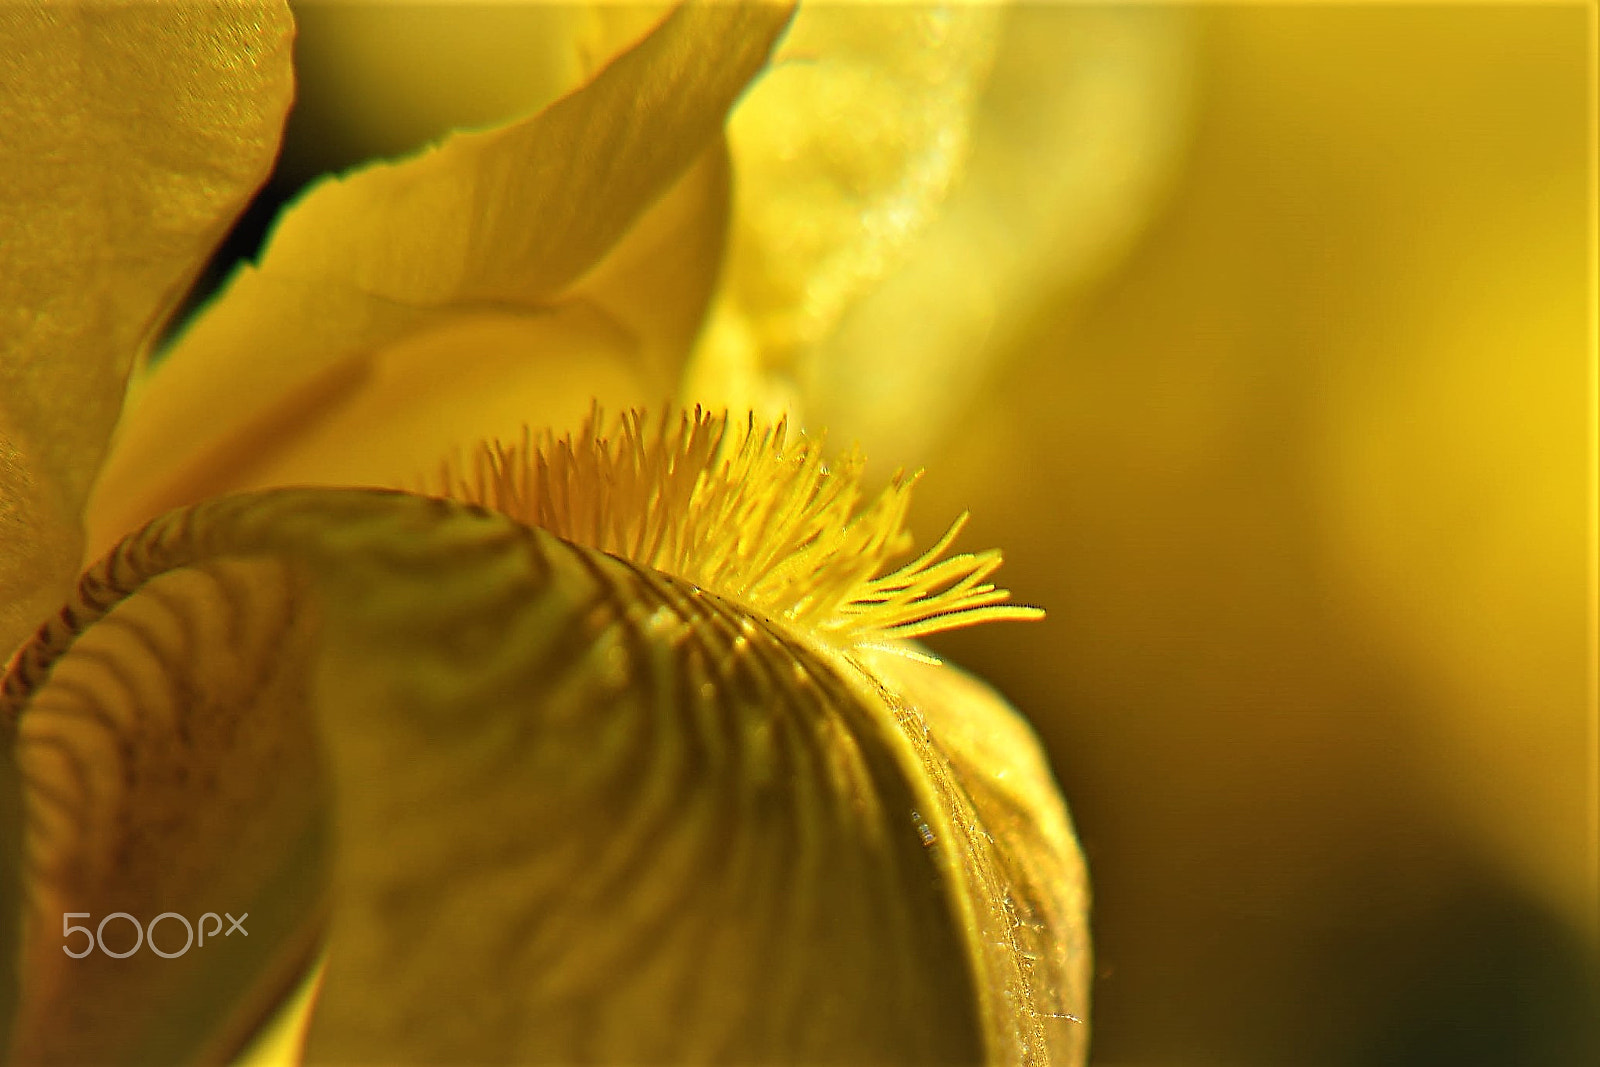 Nikon AF-S Nikkor 85mm F1.8G sample photo. Flower photography